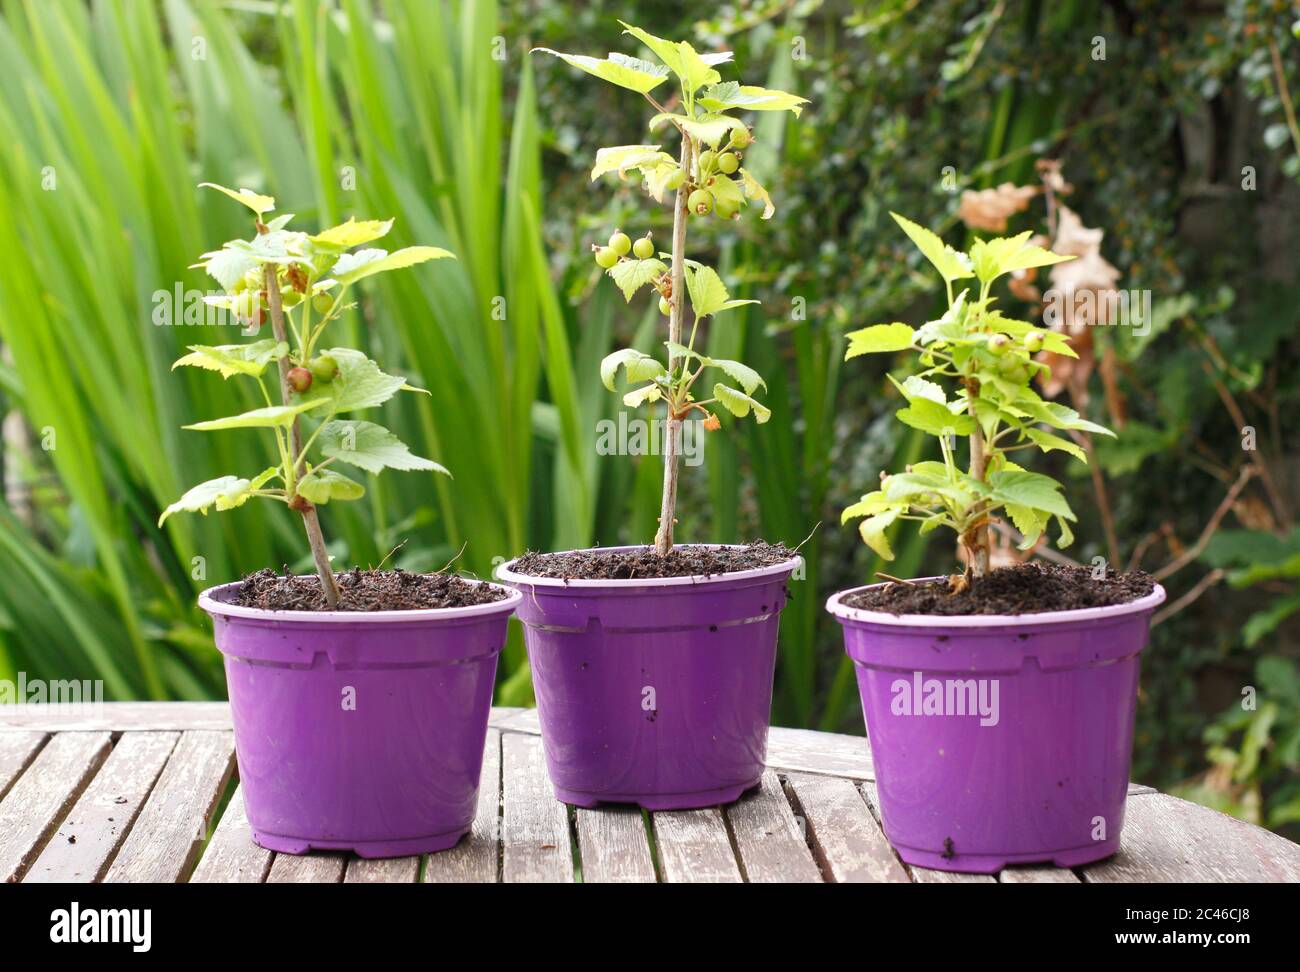 Ribes nigrum. Jeunes plants de cassis sains, prélevés sur boutures. ROYAUME-UNI Banque D'Images